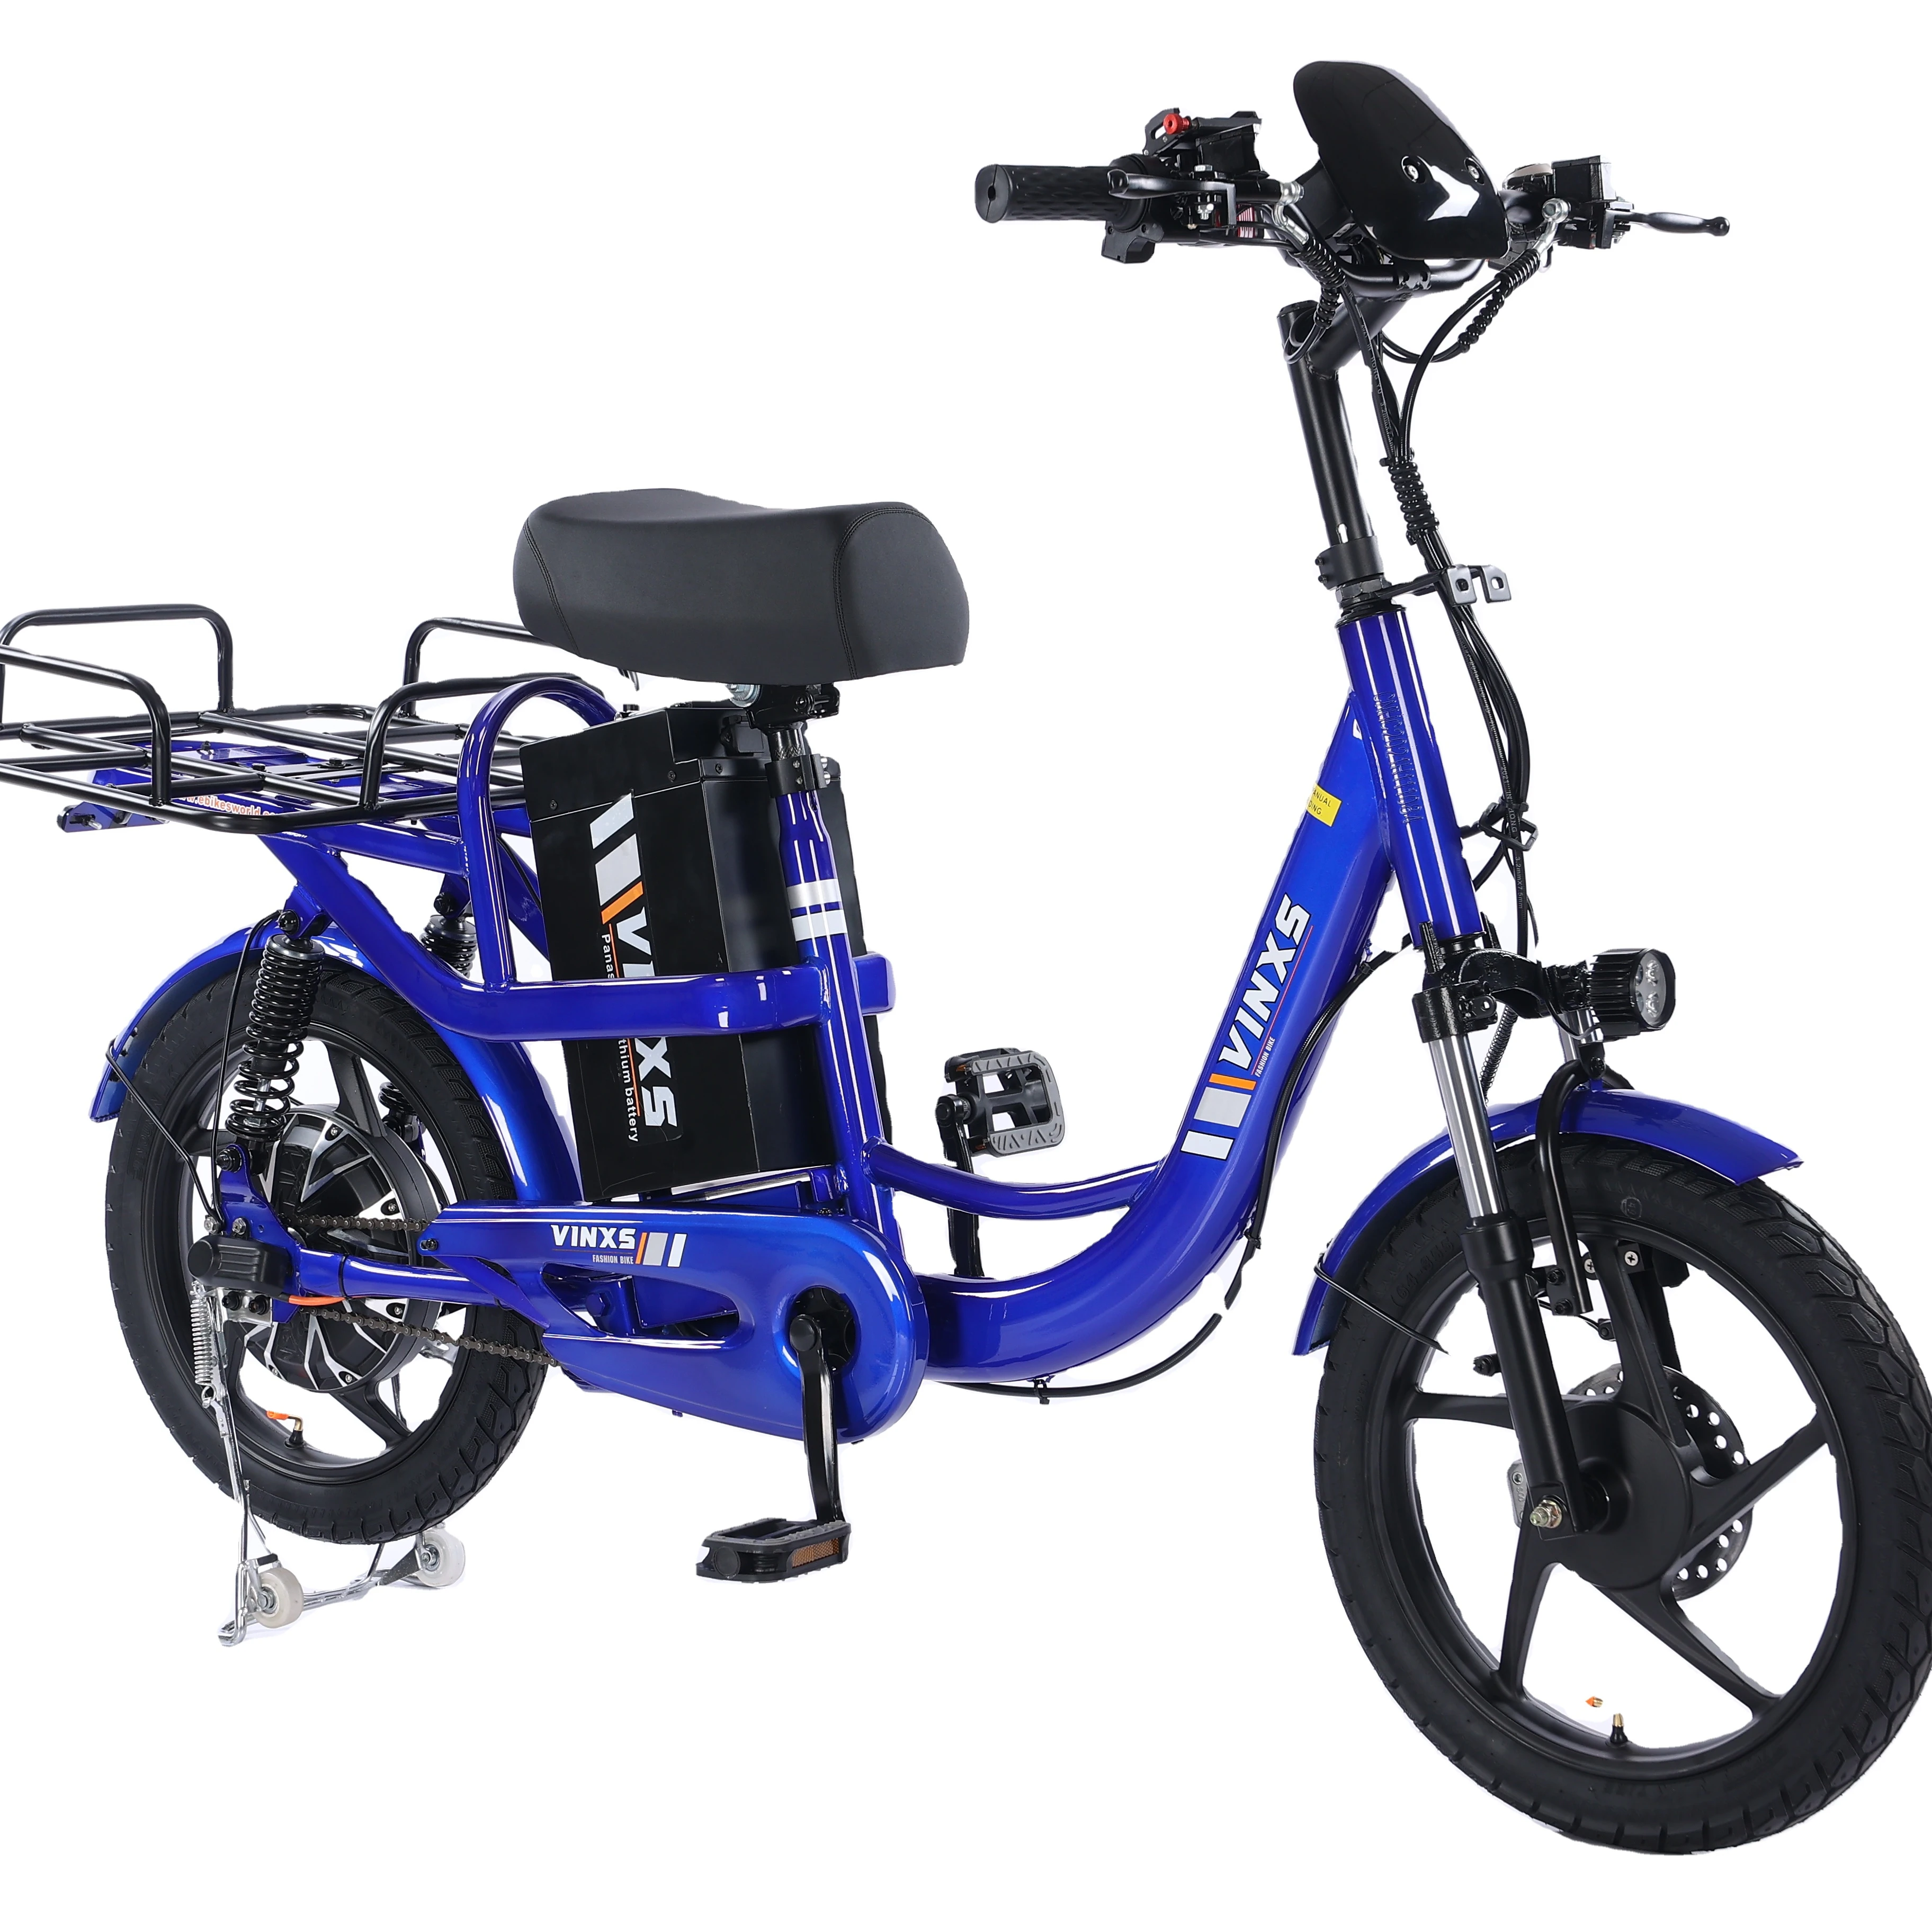 Xe đạp điện hai bánh: Hình ảnh về xe đạp điện hai bánh sẽ giúp bạn khám phá những tính năng tiện ích và hiện đại. Với khả năng tiết kiệm năng lượng và thân thiện với môi trường, chiếc xe đạp này sẽ trở thành người bạn đồng hành đắc lực cho các chuyến đi của bạn.